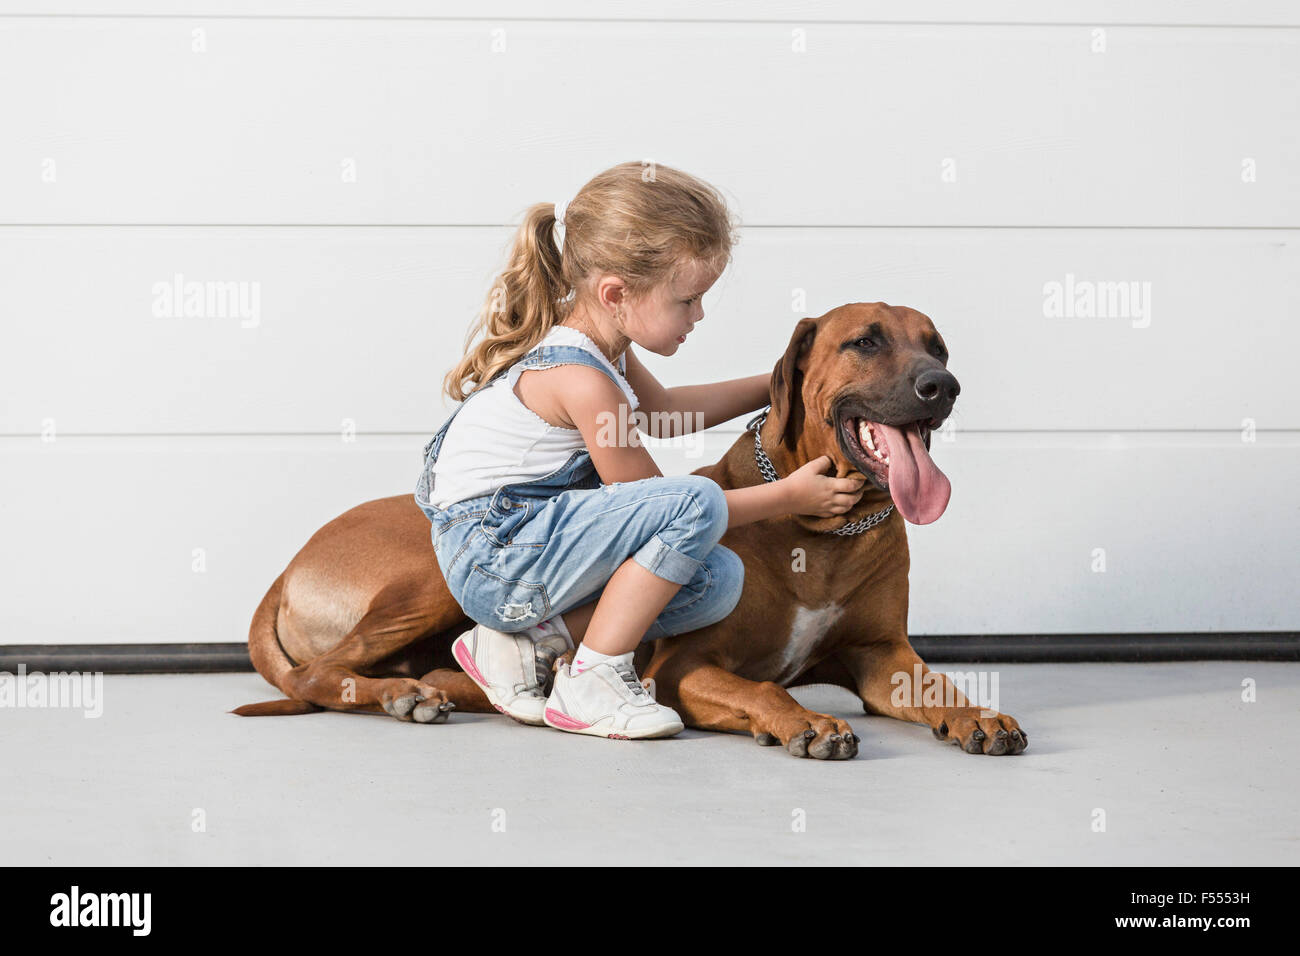 Mädchen streicheln Hund gegen weiße Wand Stockfoto